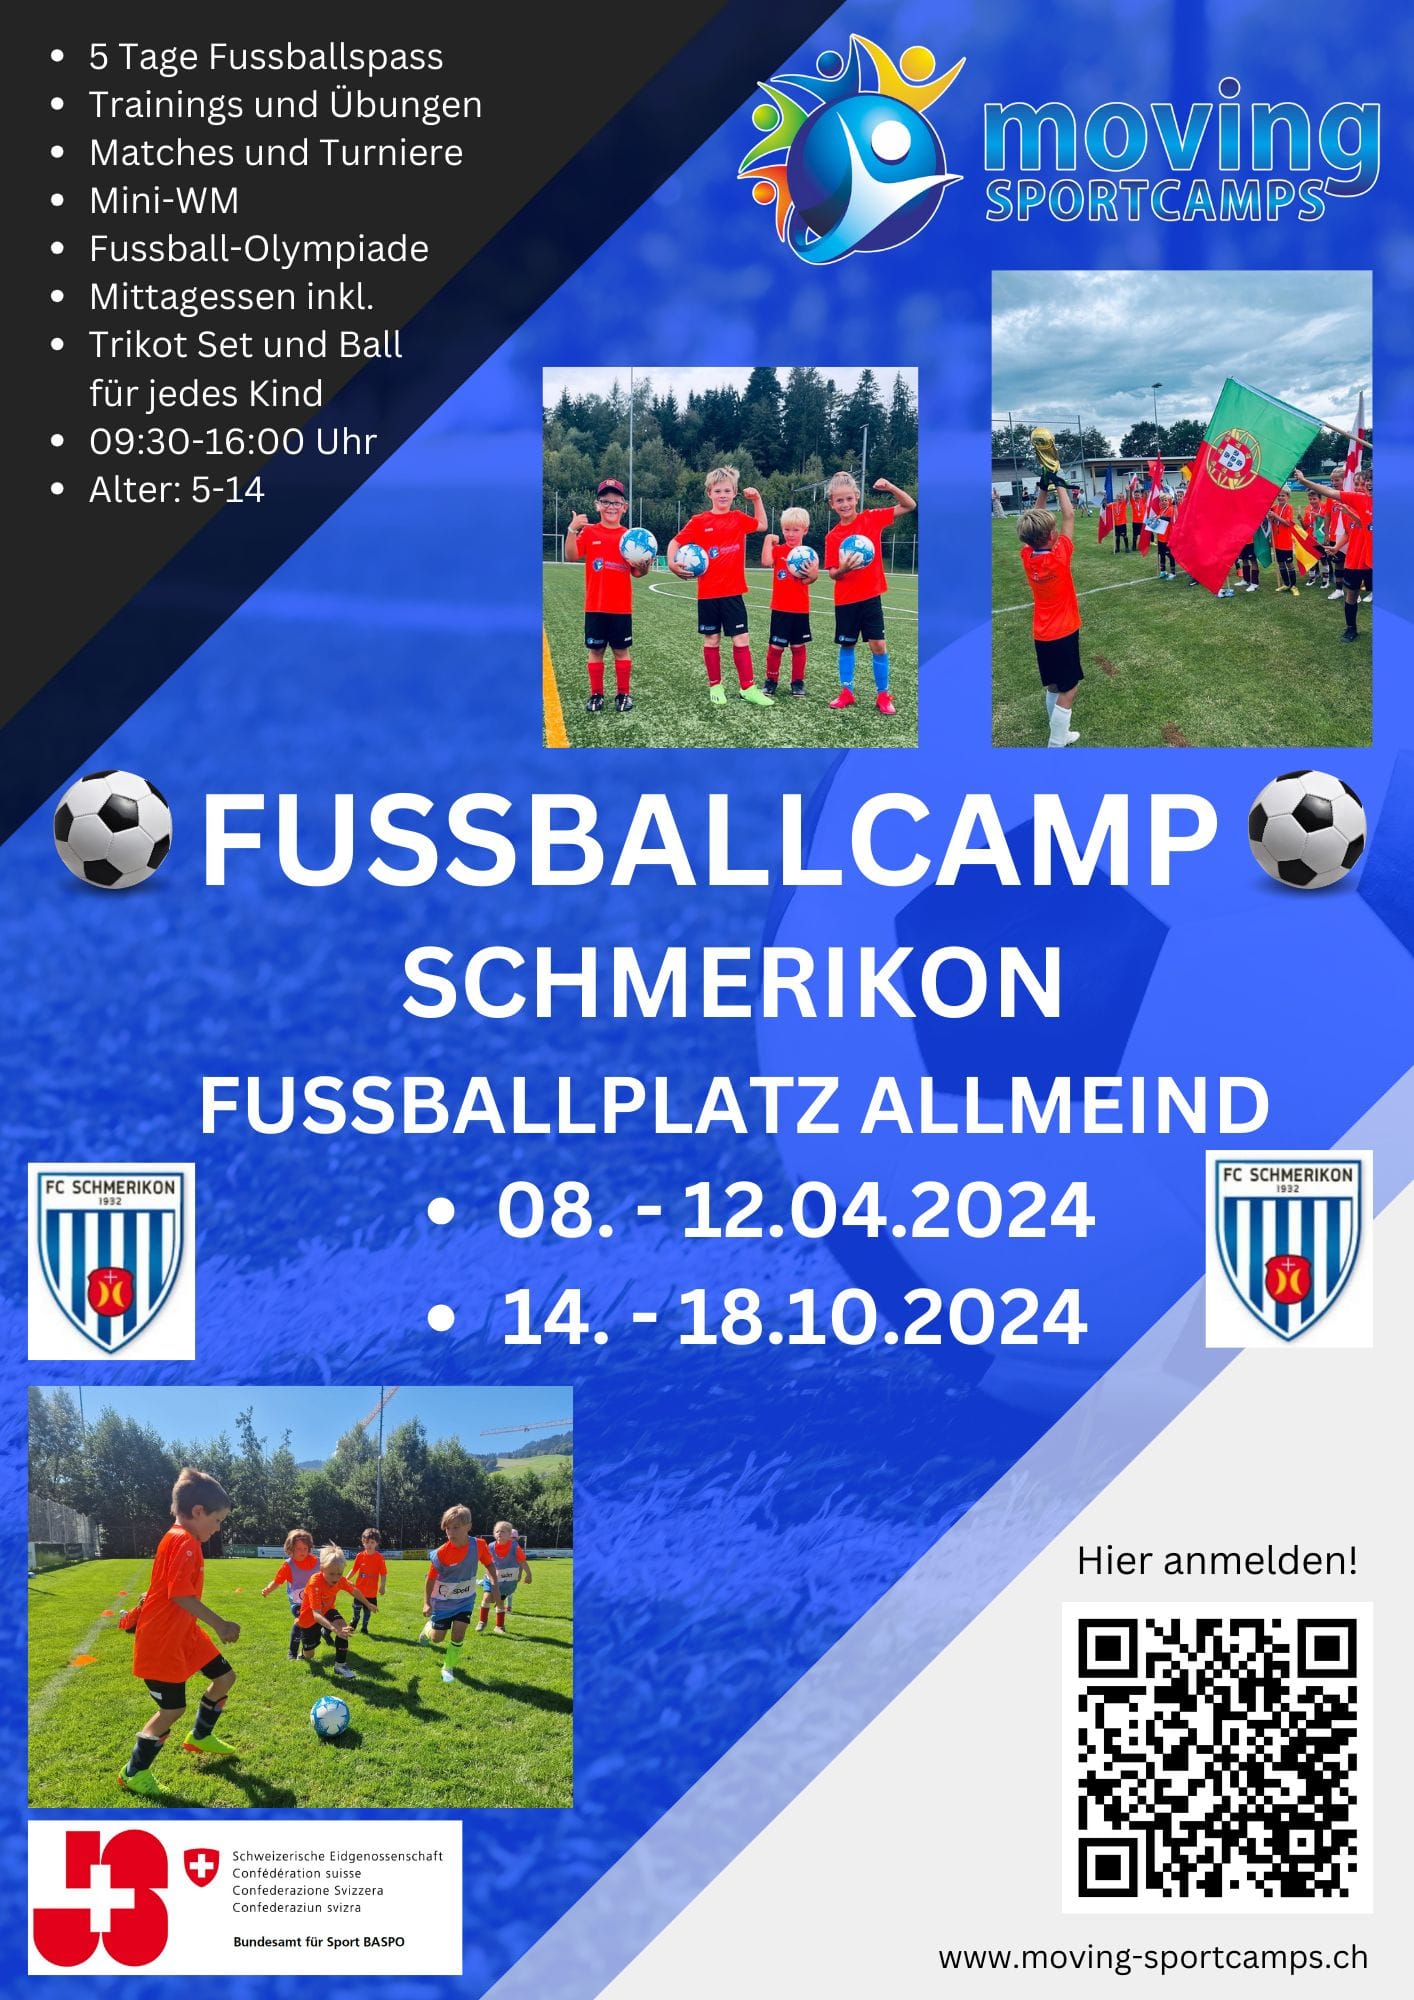 Flyer zum Fussballcamp in den Frühlings- und Herbstferien 2024 in Schmerikon